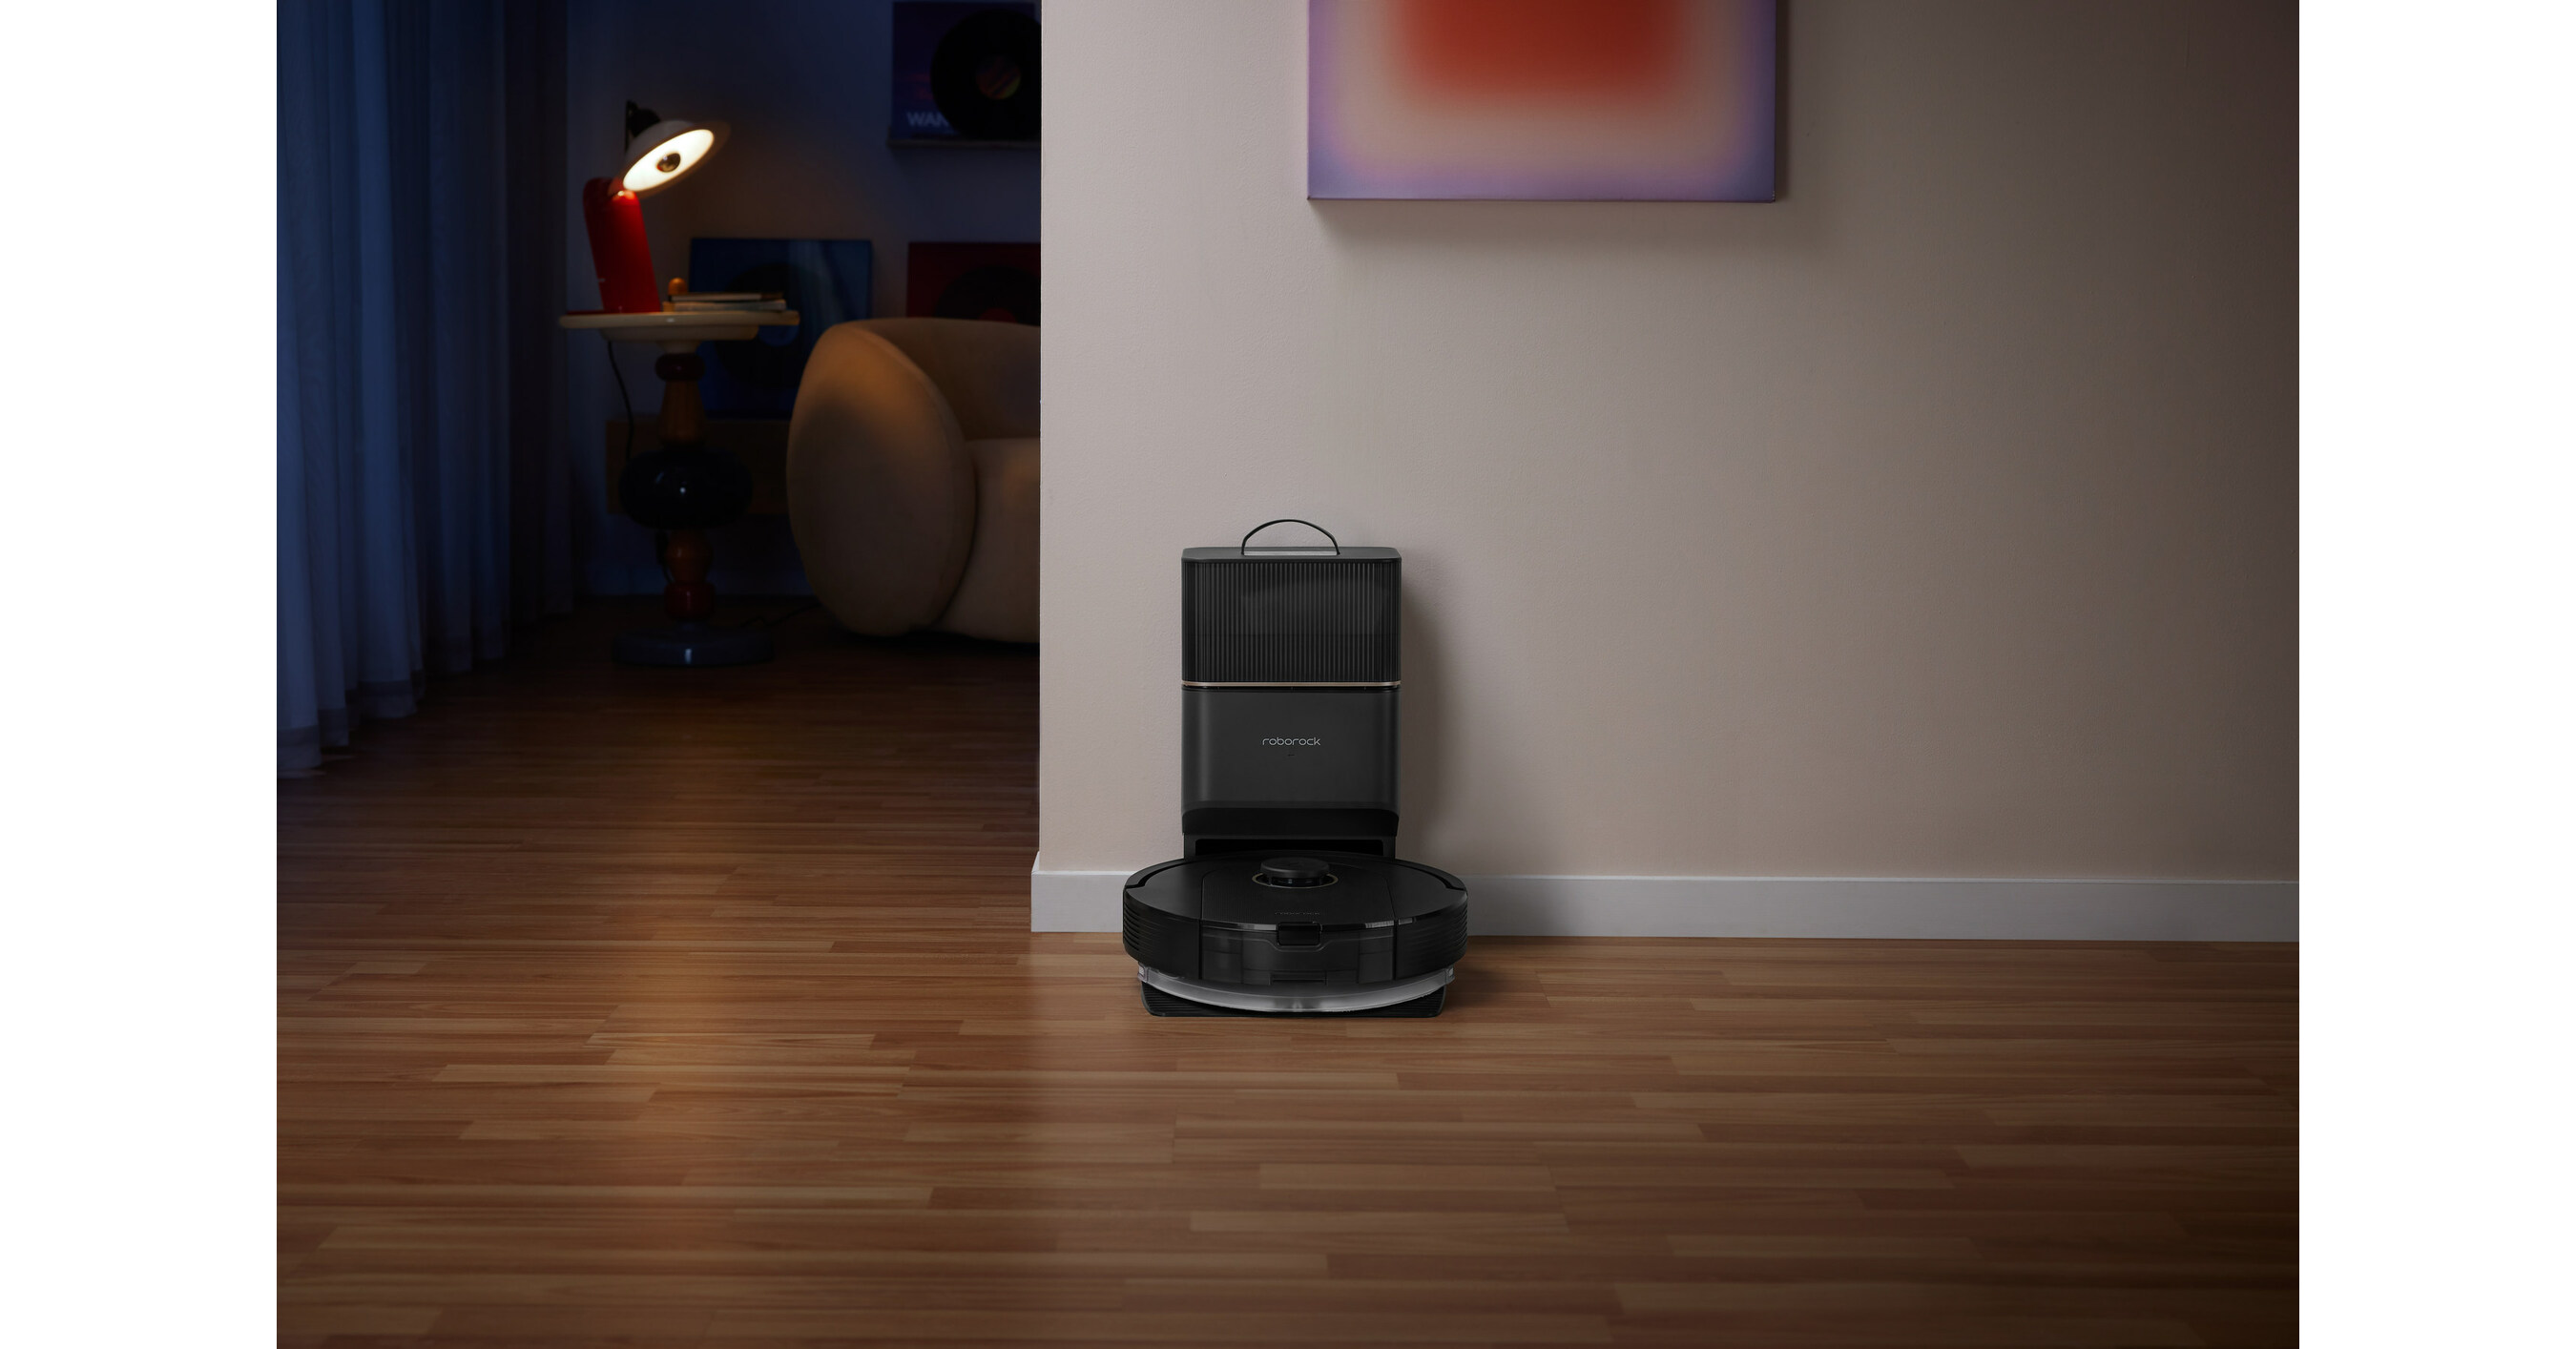 Roborock Q5+ review: A powerful, convenient robot vacuum